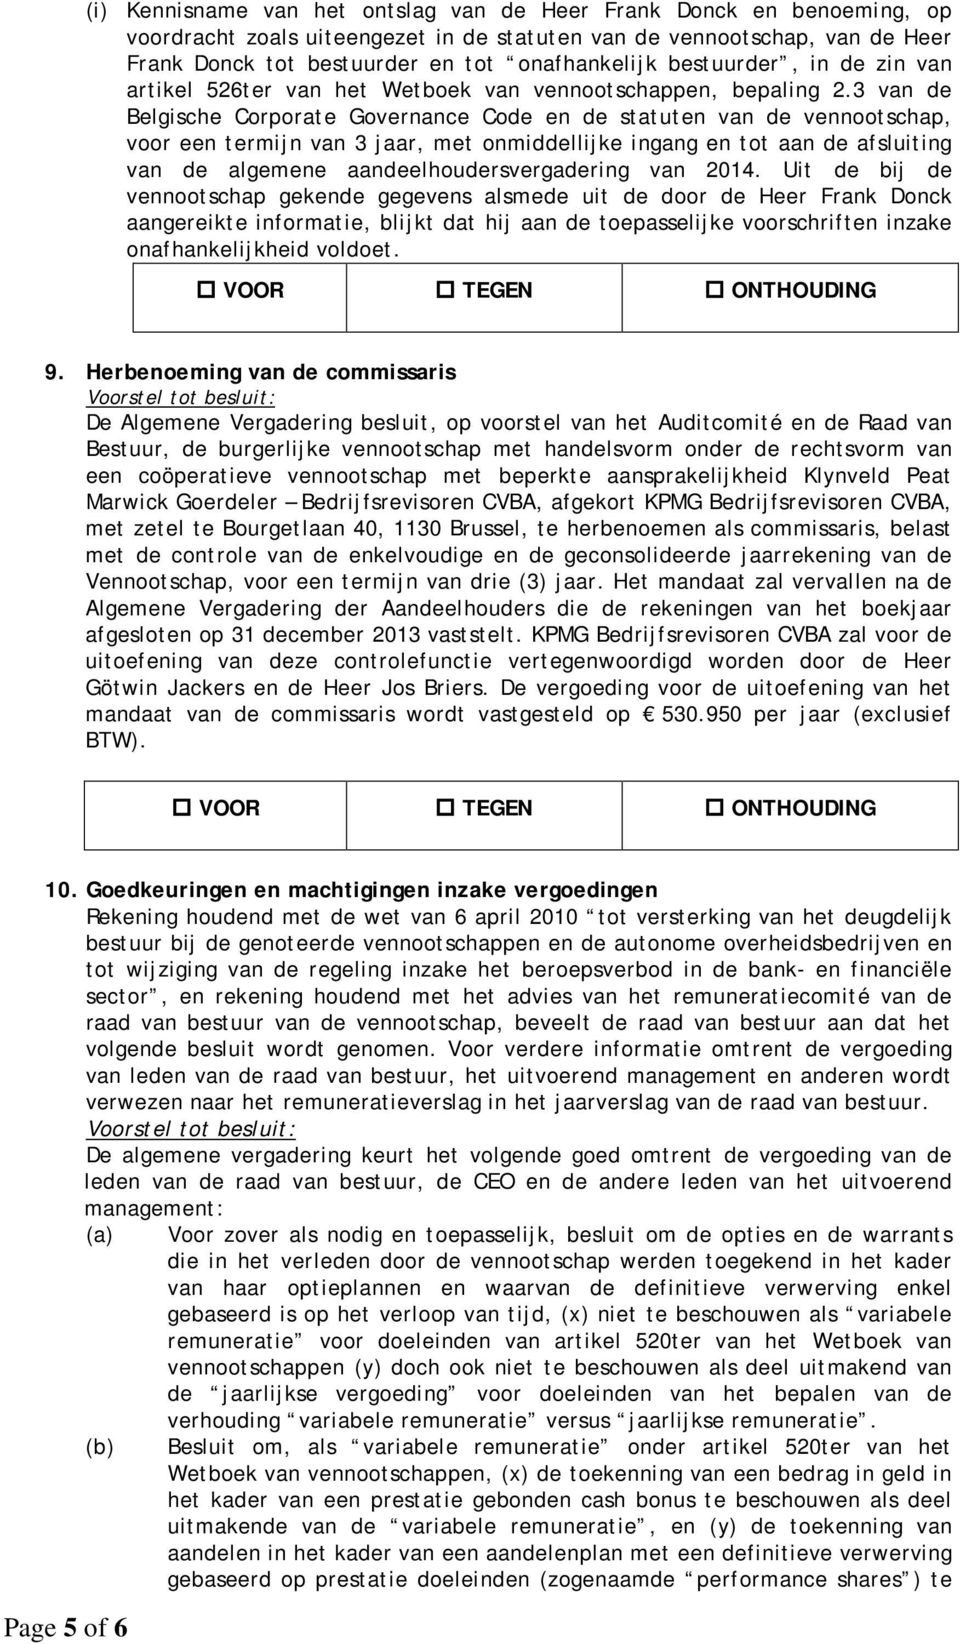 3 van de Belgische Corporate Governance Code en de statuten van de vennootschap, voor een termijn van 3 jaar, met onmiddellijke ingang en tot aan de afsluiting van de algemene